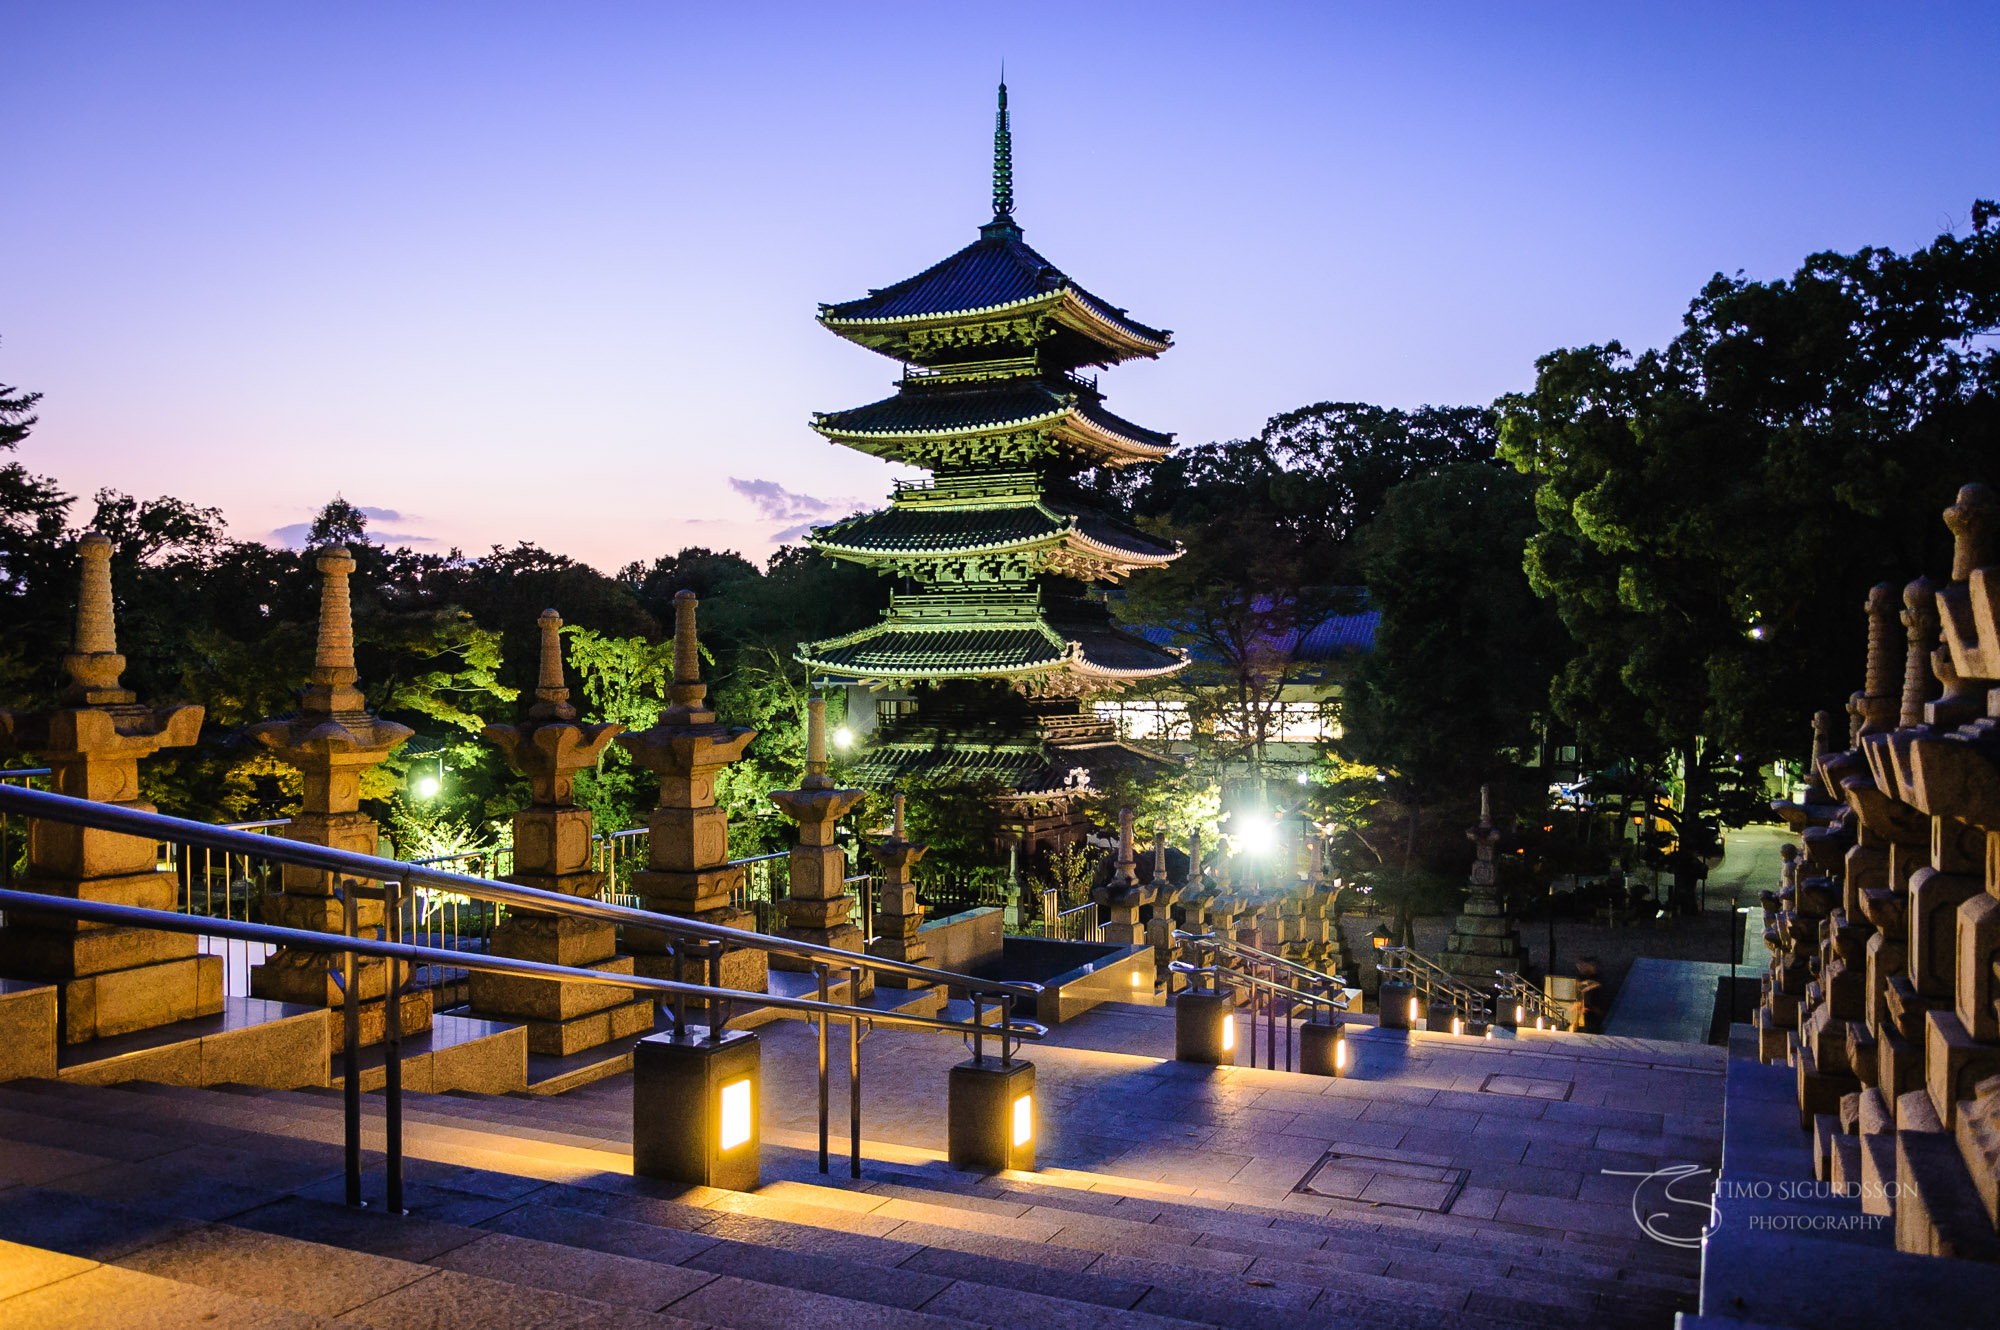 Koshoji Temple, Nagoya, Japan. Pagoda at dusk.